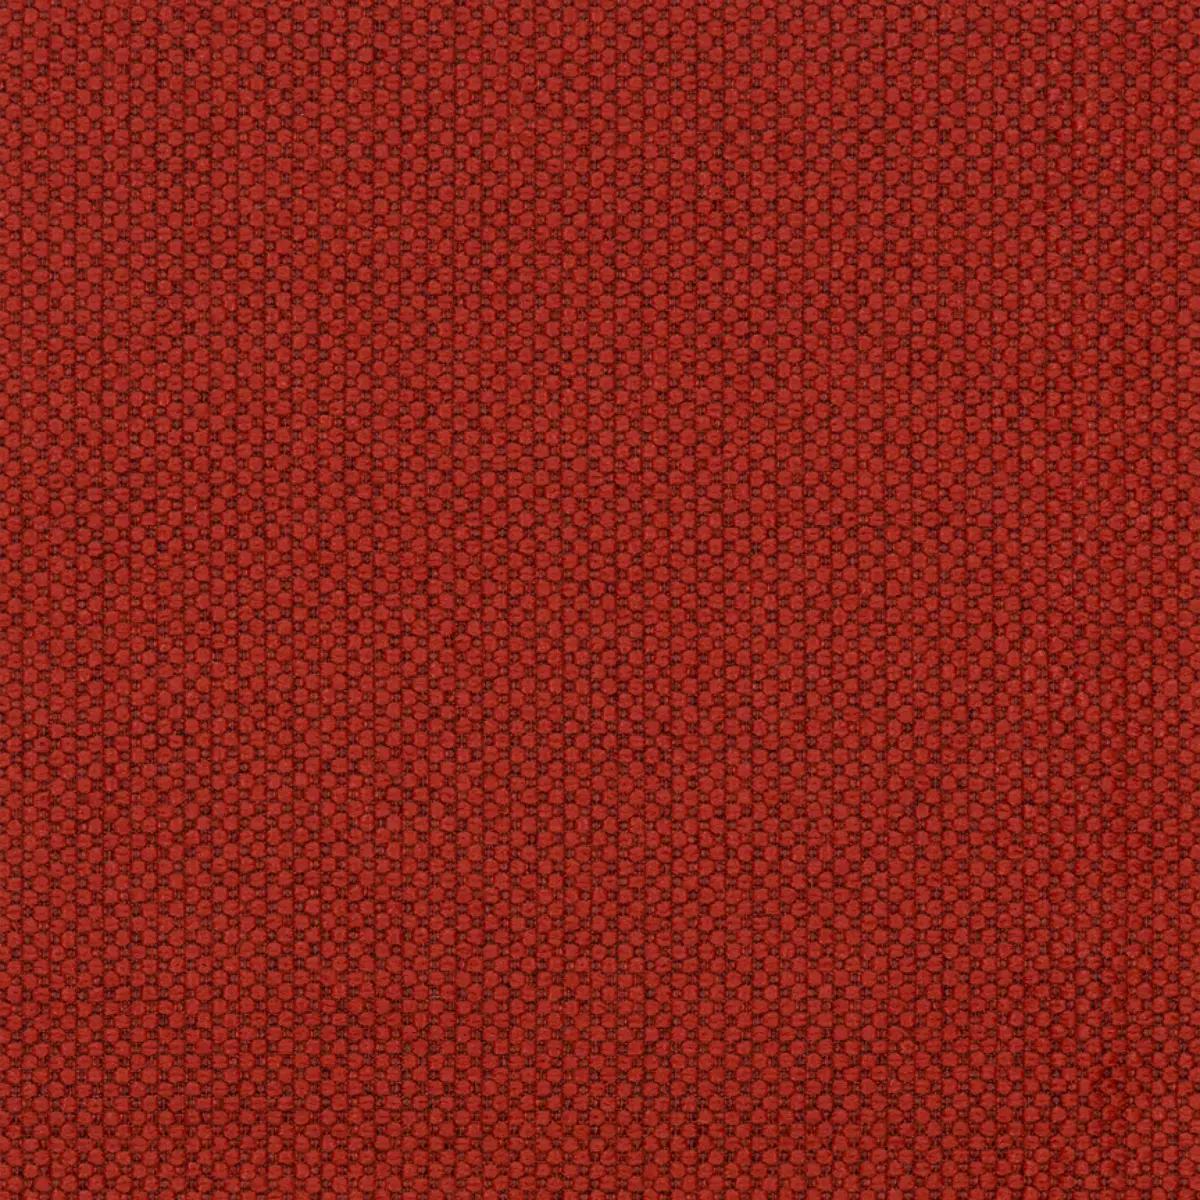 Fabric sample Merit 0038 red